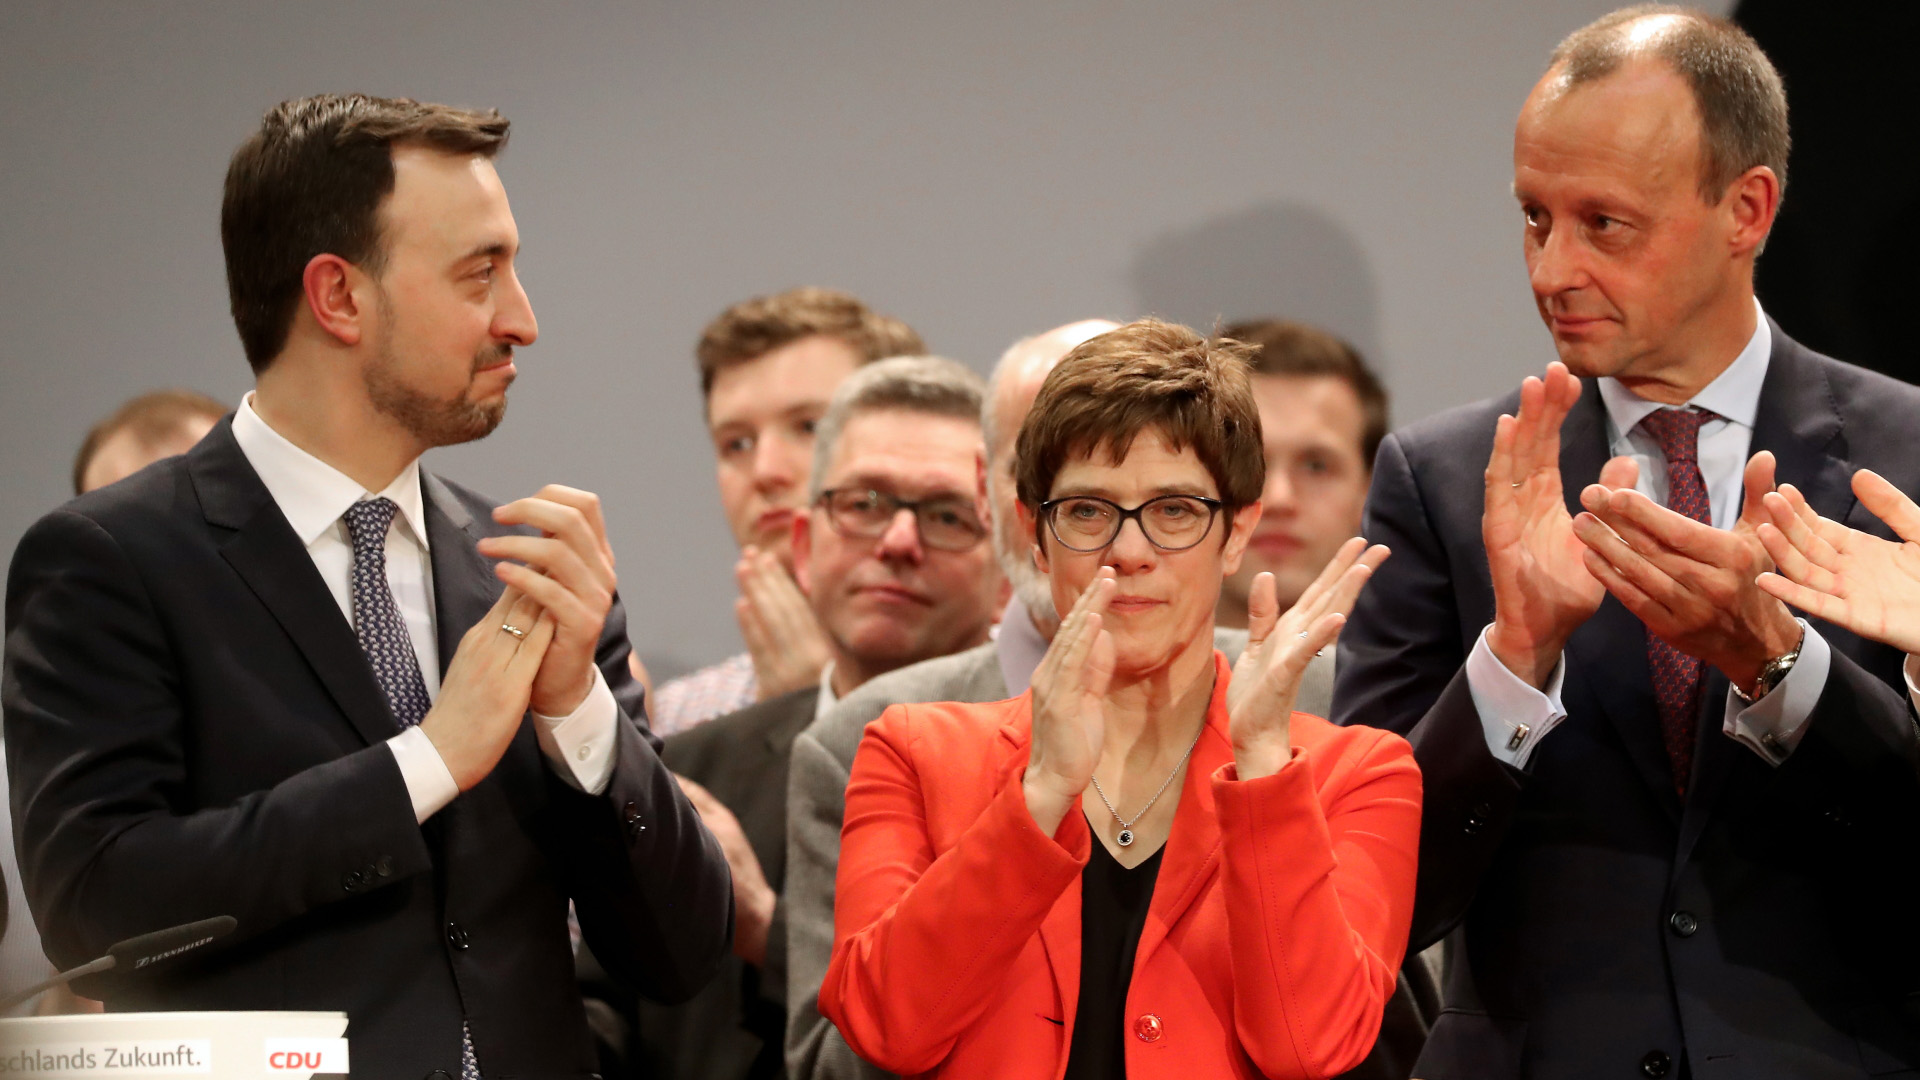 Generalsekretär  Paul Ziemiak, Parteichefin Annegret Kramp-Karrenbauer sowie der ehemalige Fraktionschef Friedrich Merz (von links) | FRIEDEMANN VOGEL/EPA-EFE/REX